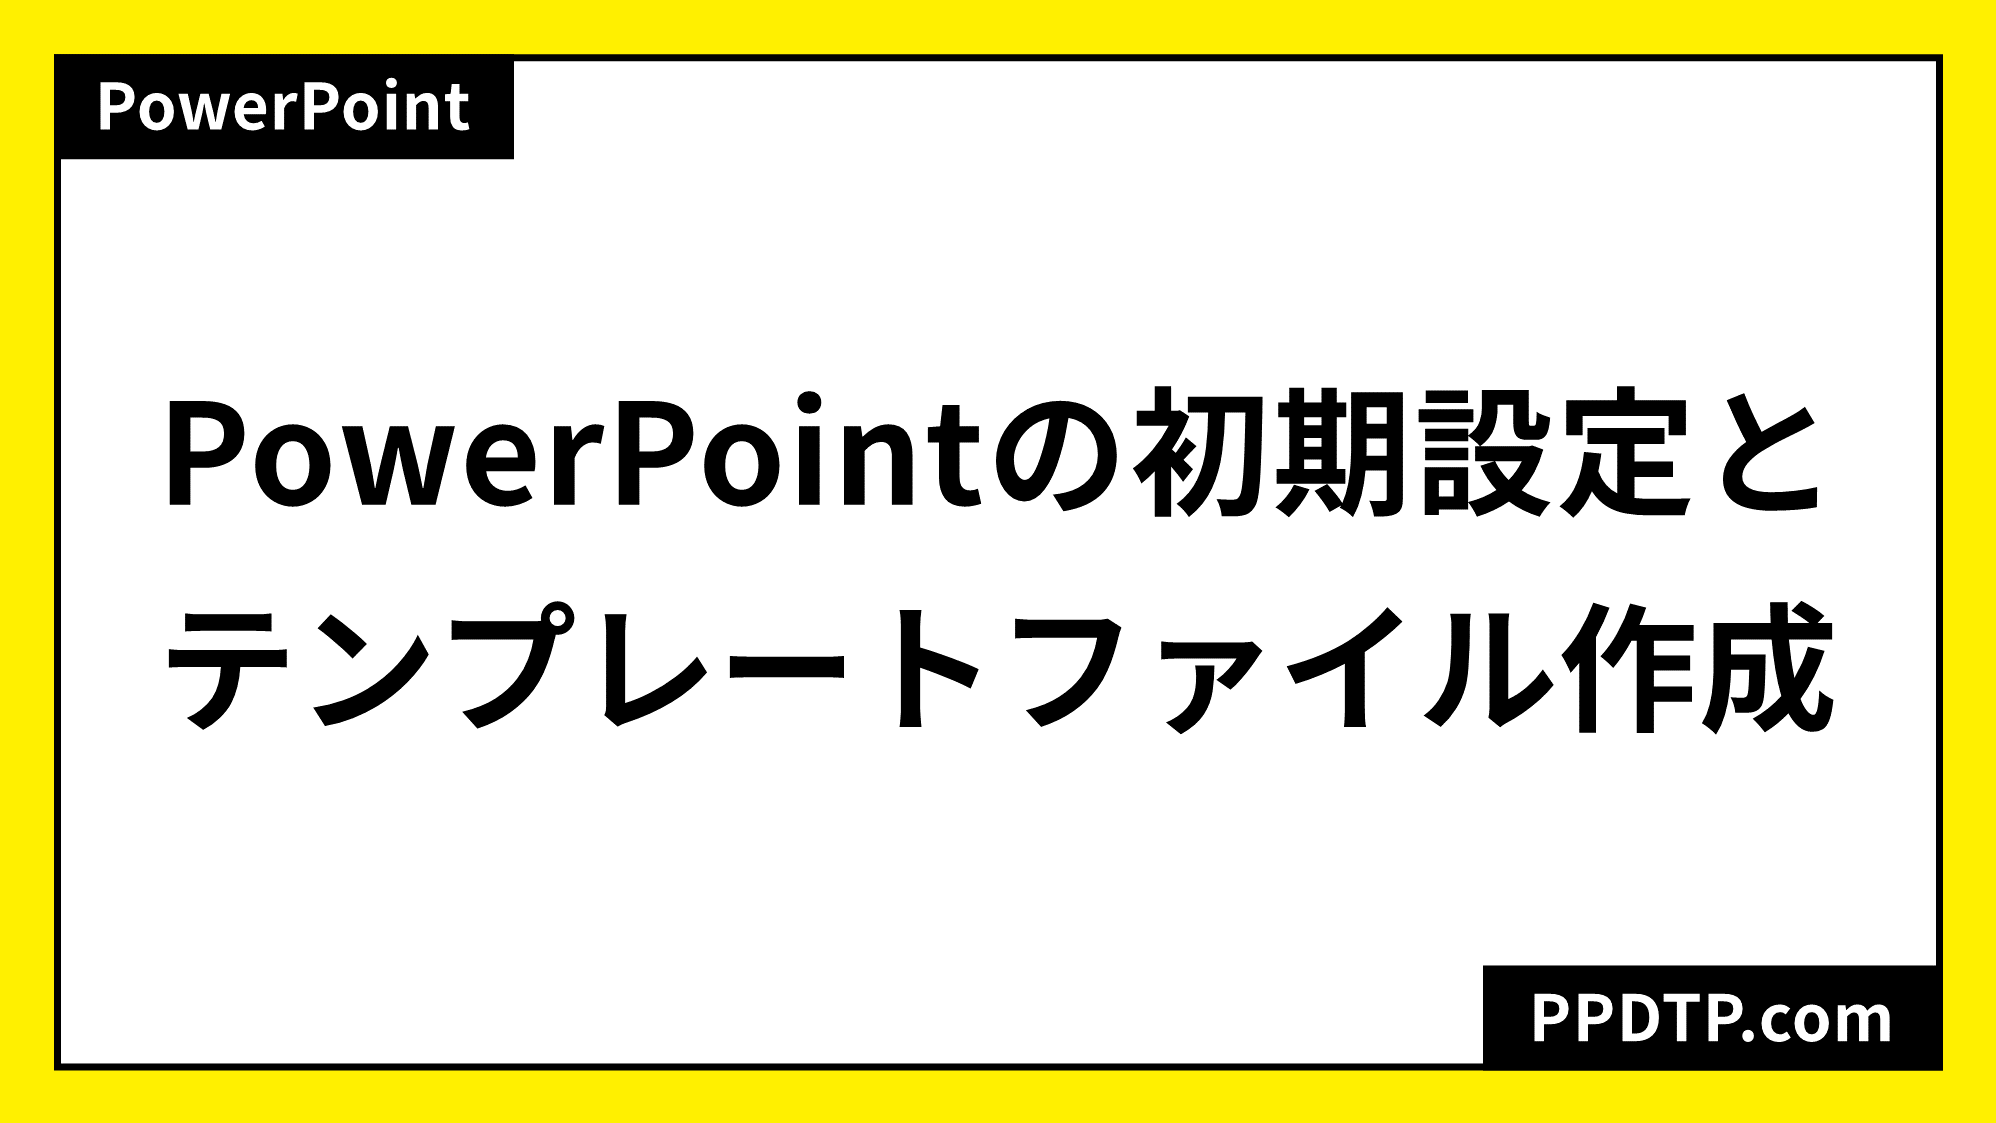 Powerpointの初期設定とテンプレートファイル作成 Ppdtp